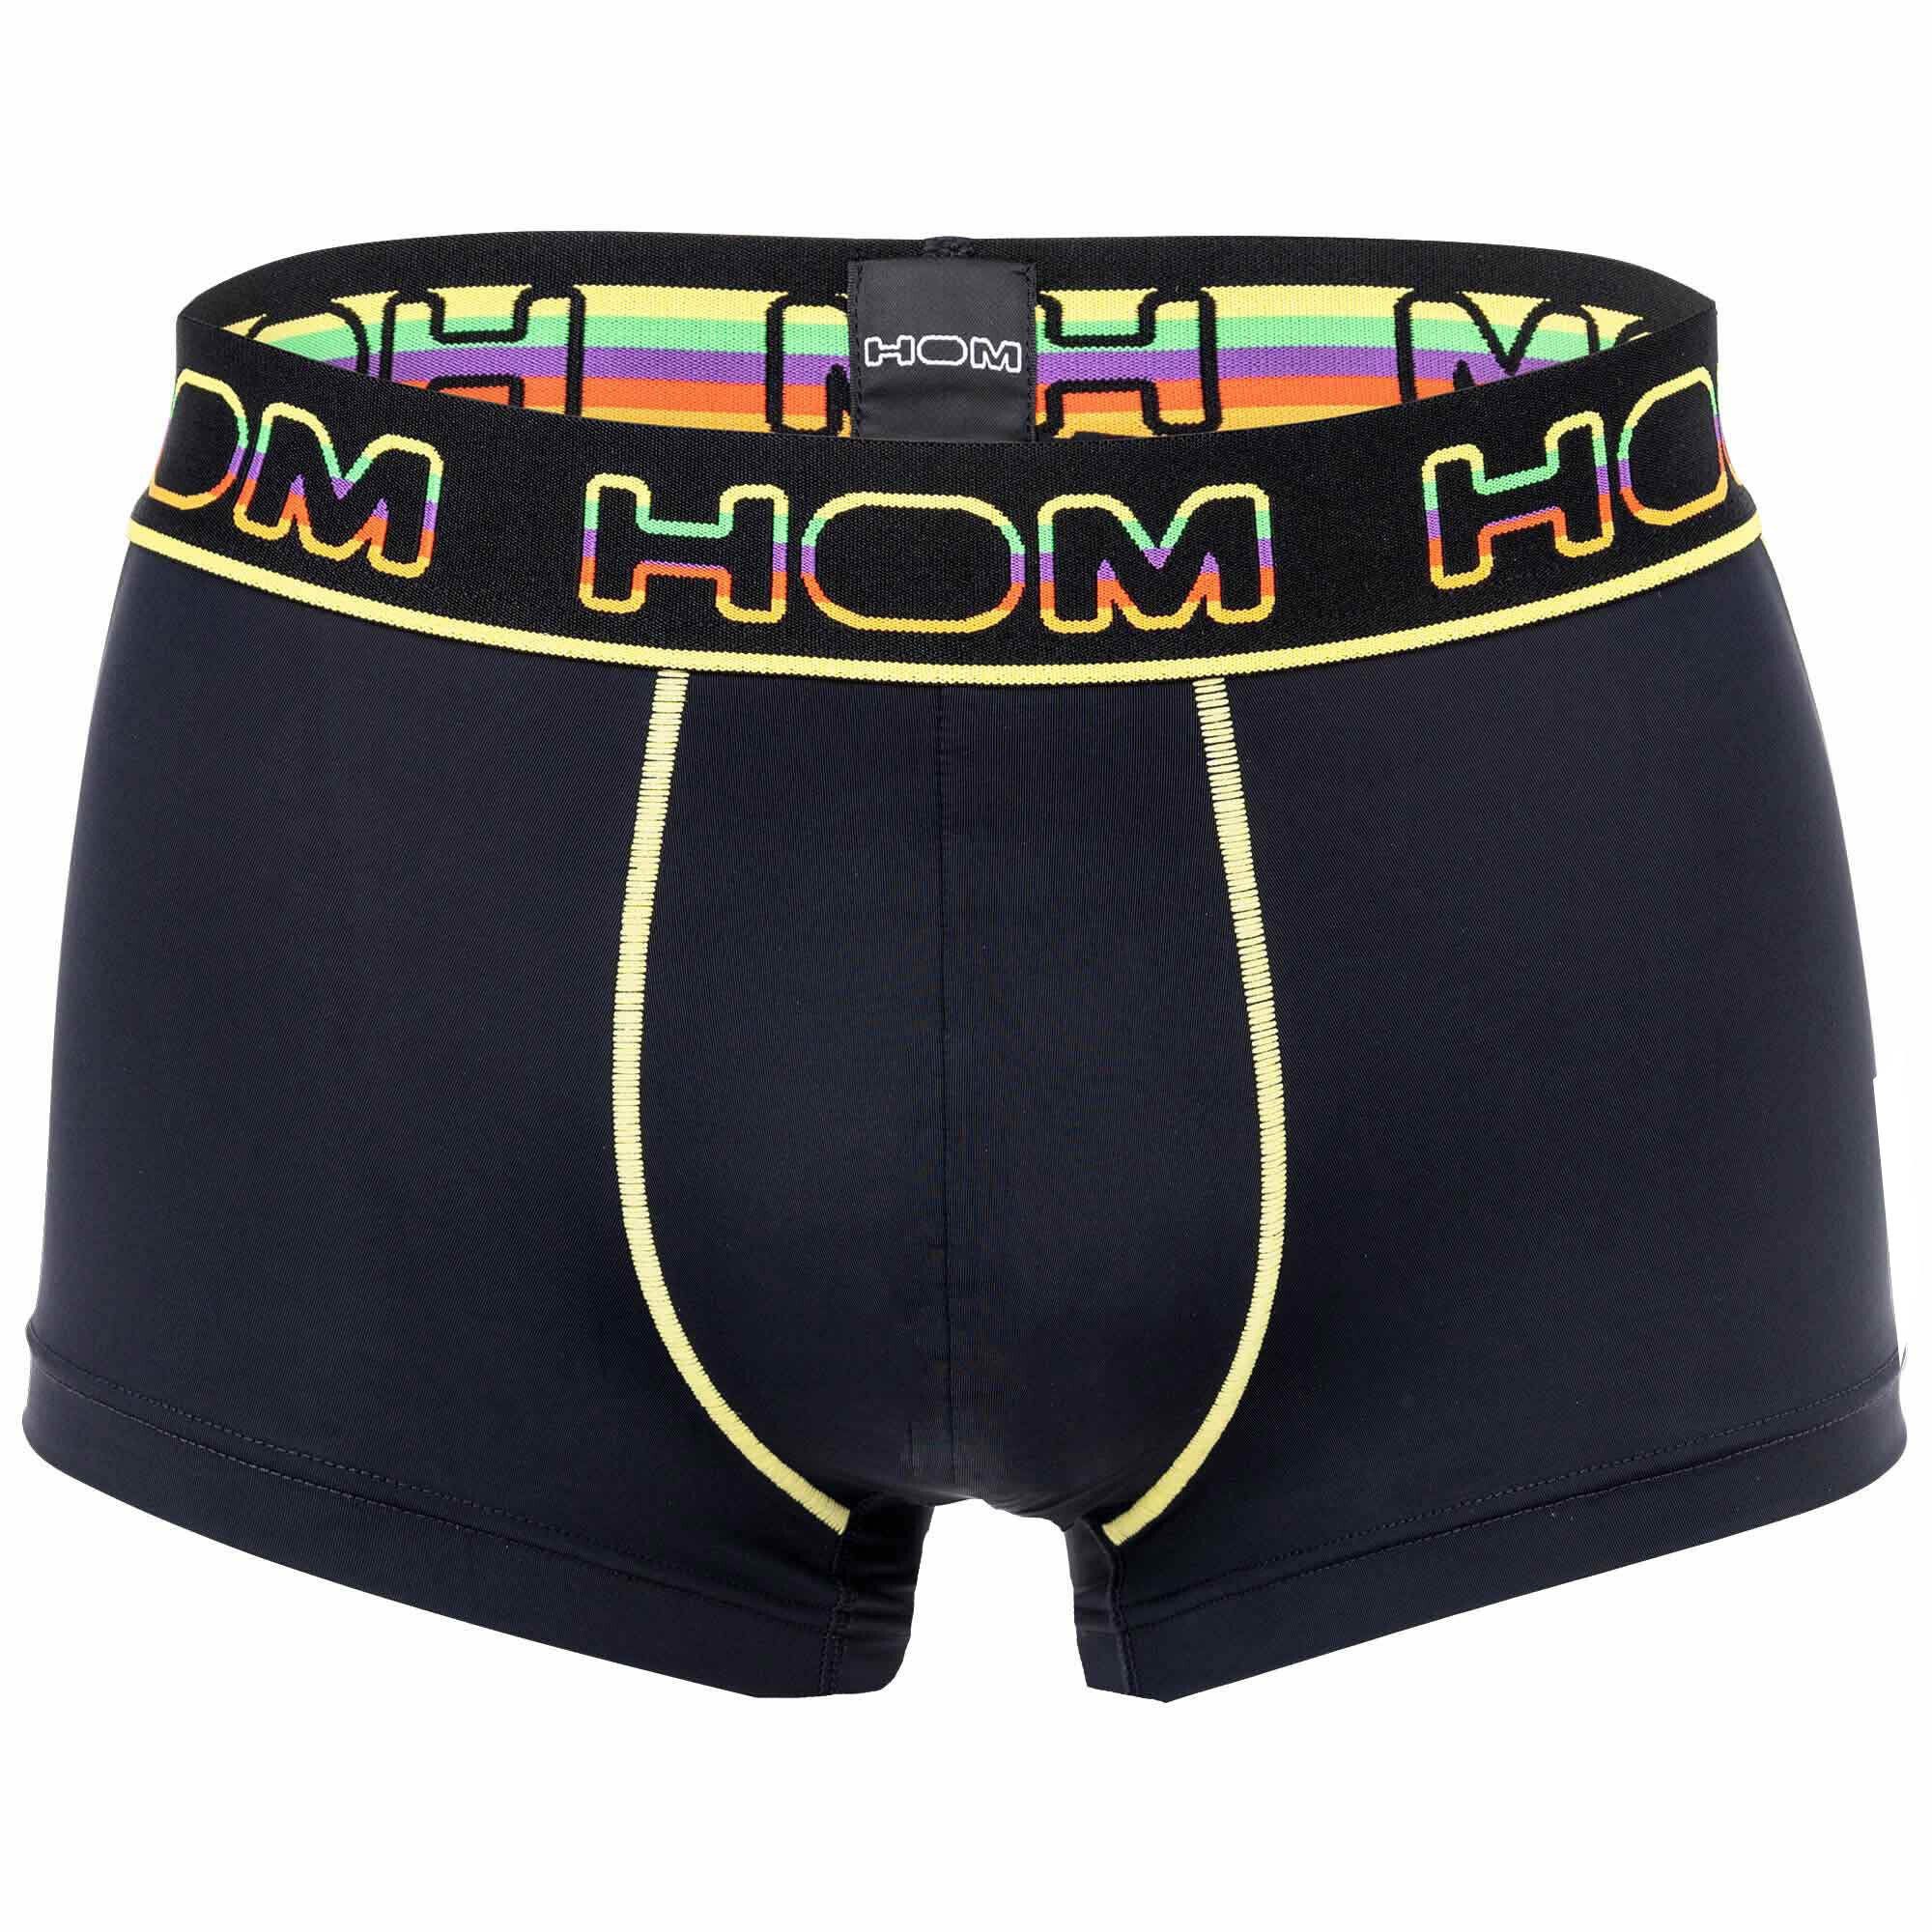 Hom Boxer Herren Trunks - Rainbow Sport, Pants, Unterwäsche Schwarz